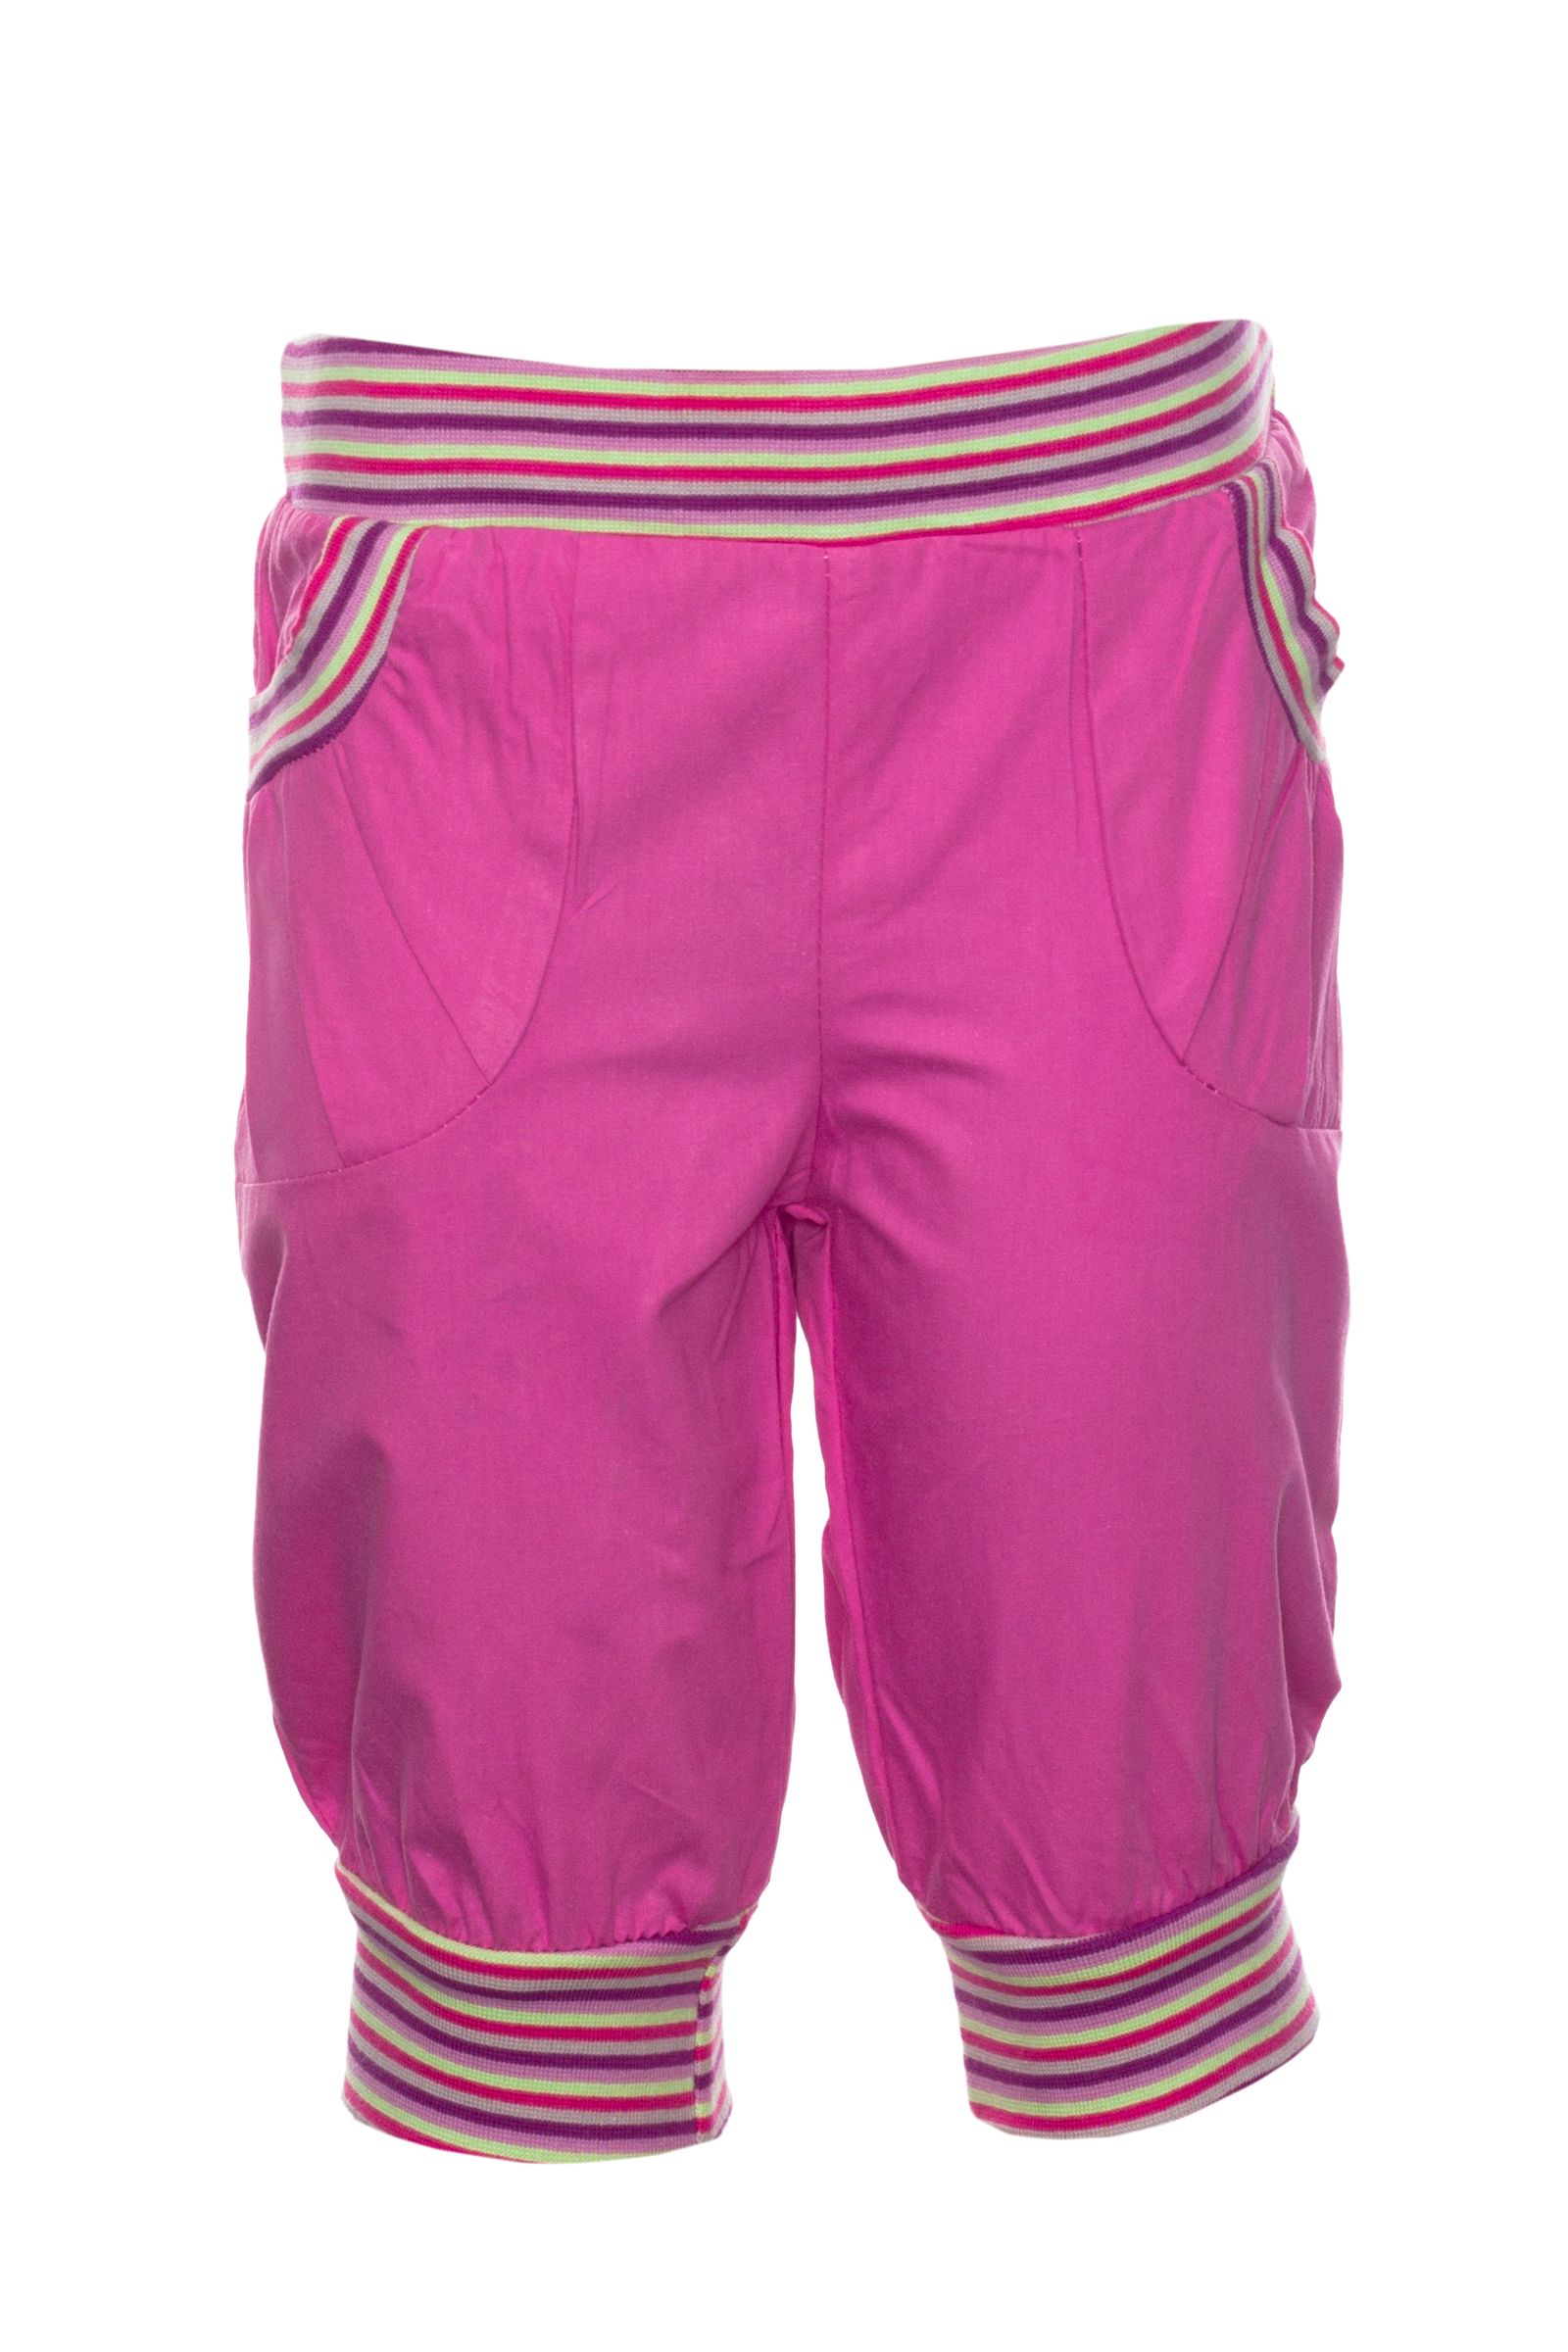 Бриджи-БЖ02-2010 оптом от производителя детской одежды 'Алёна'